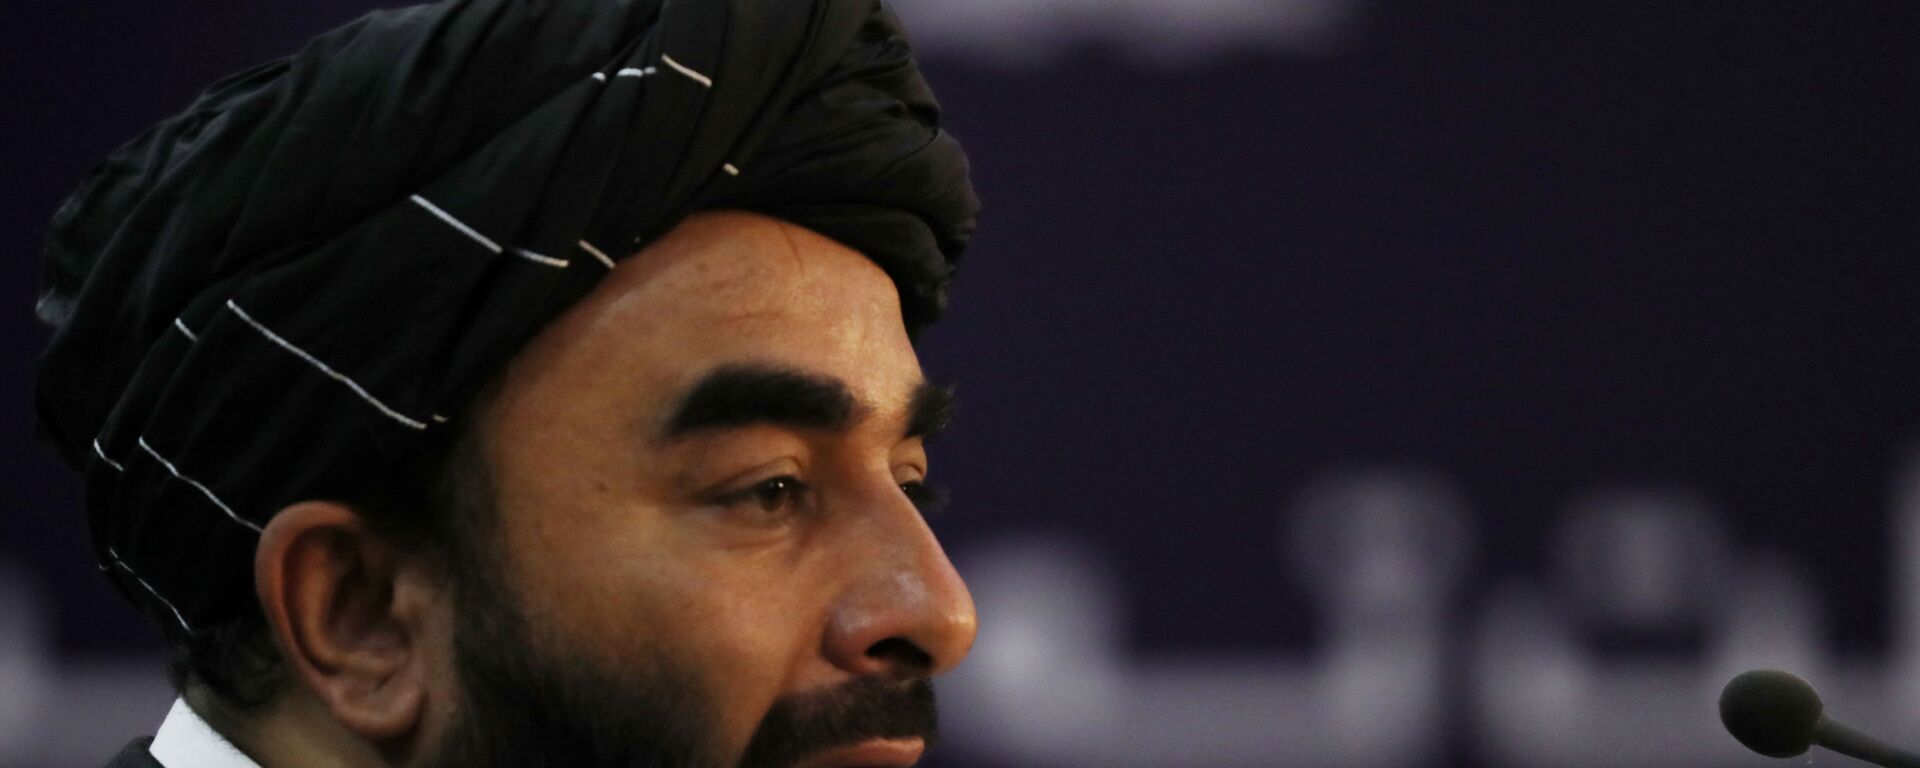 ممثل حركة طالبان (المحظورة في روسيا) ذبيح الله مجاهد في كابول، أفغانستان 6 سبتمبر 2021 - سبوتنيك عربي, 1920, 24.09.2021